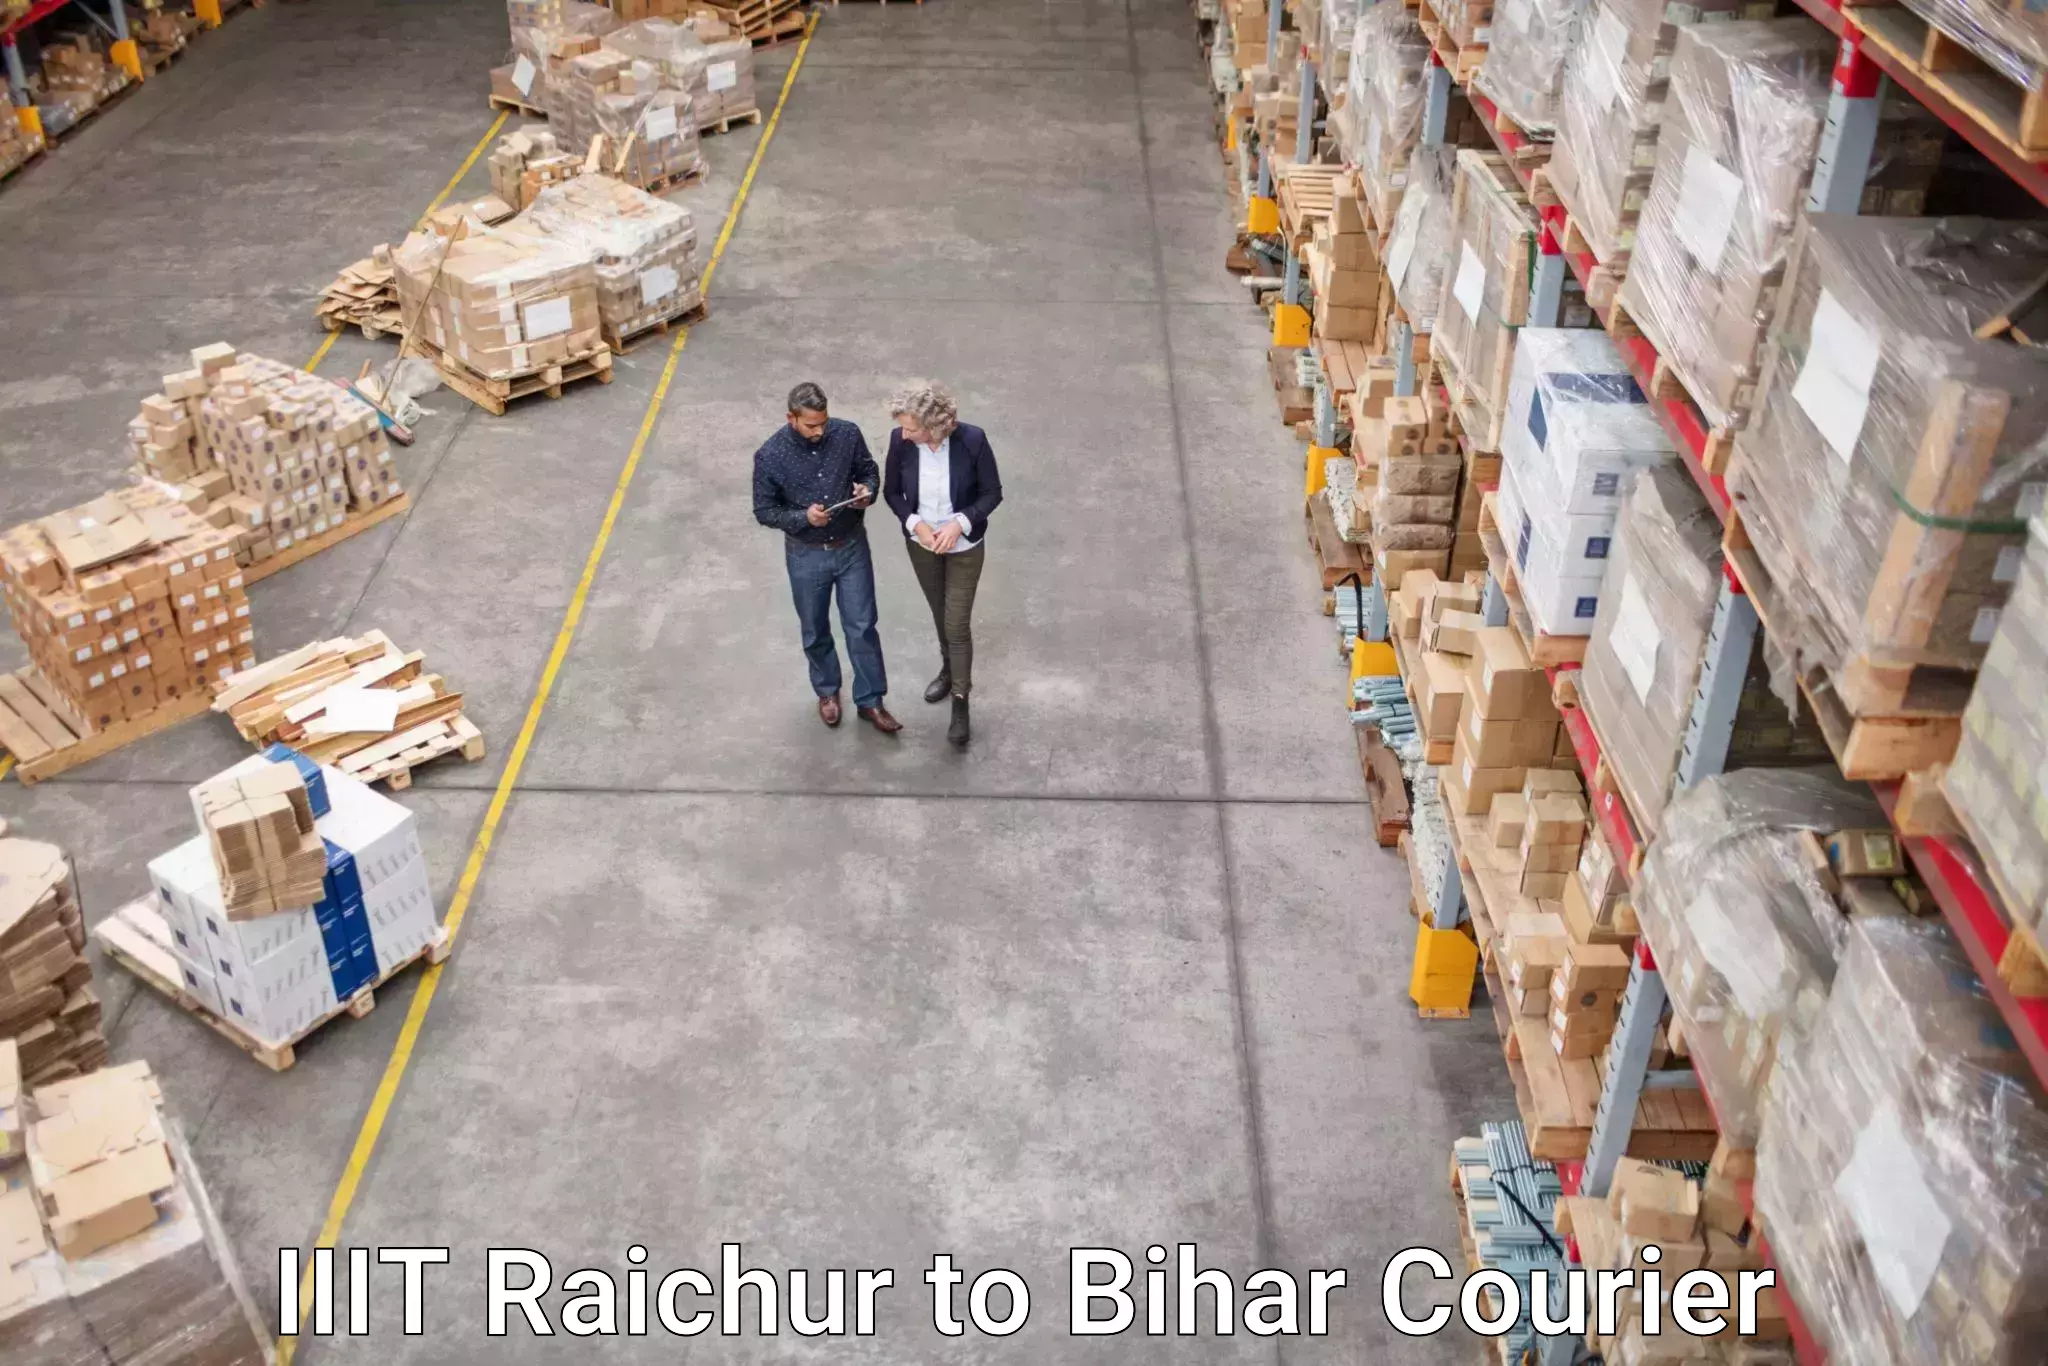 Holiday shipping services IIIT Raichur to Barhiya